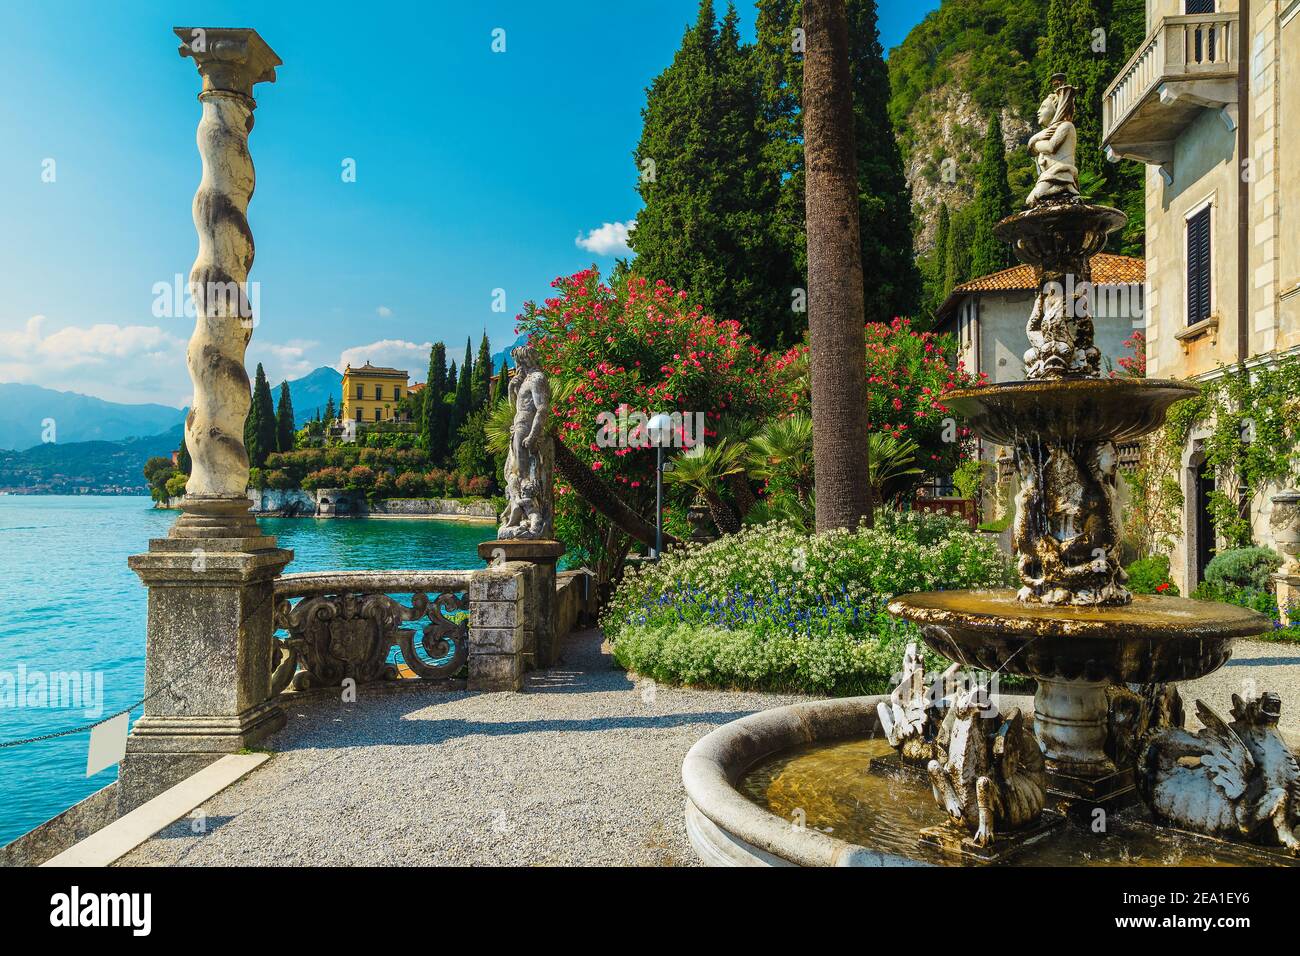 Superbe villa de vacances au bord de l'eau et jardin ornemental. Différentes fleurs colorées et fontaine dans le jardin de la villa Monastero, lac de Côme, Lombardie, Banque D'Images